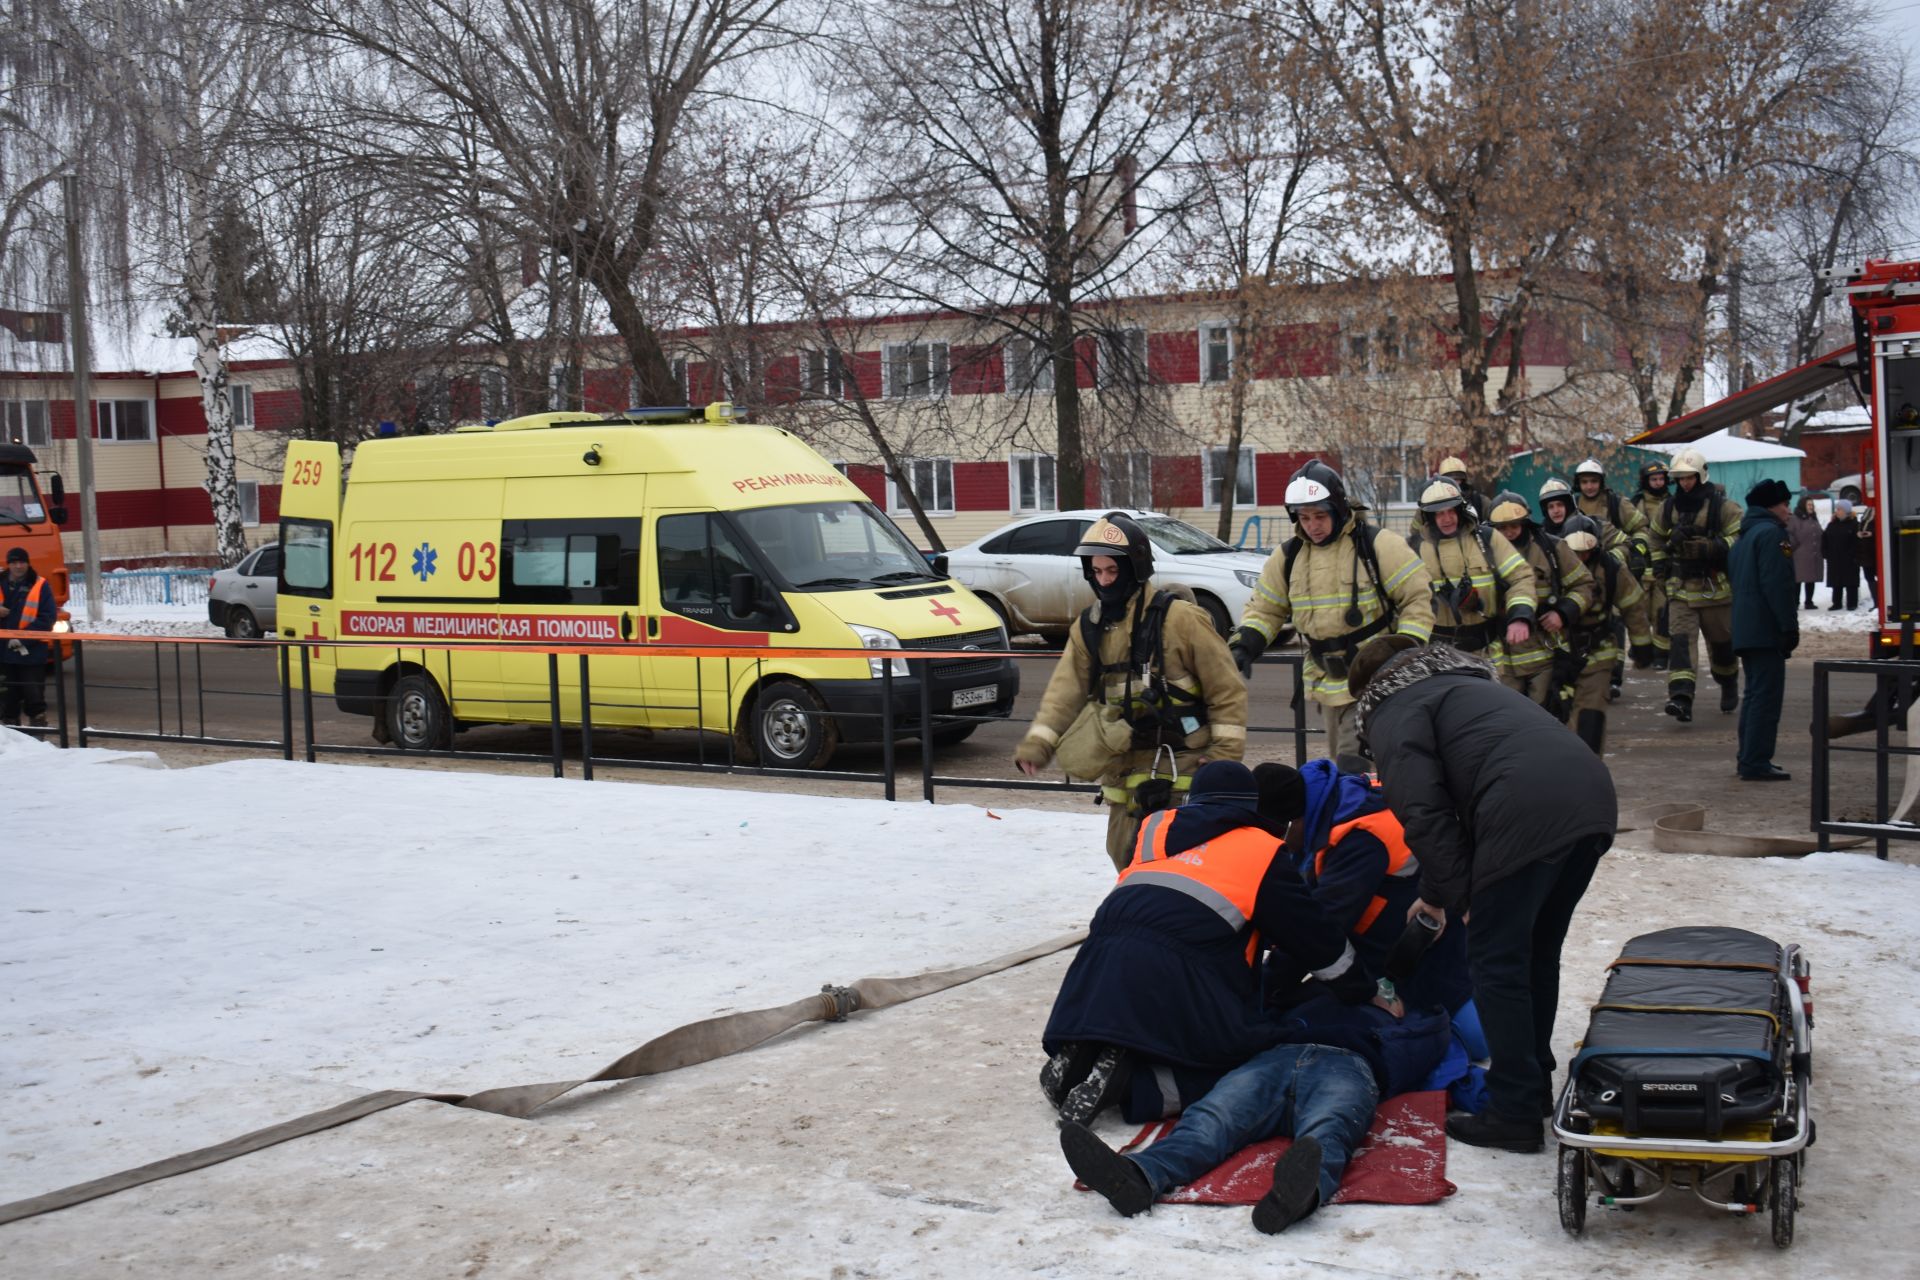 Из Ледового дворца в Чистополе срочно эвакуировали людей. На место прибыли скорая помощь и пожарные